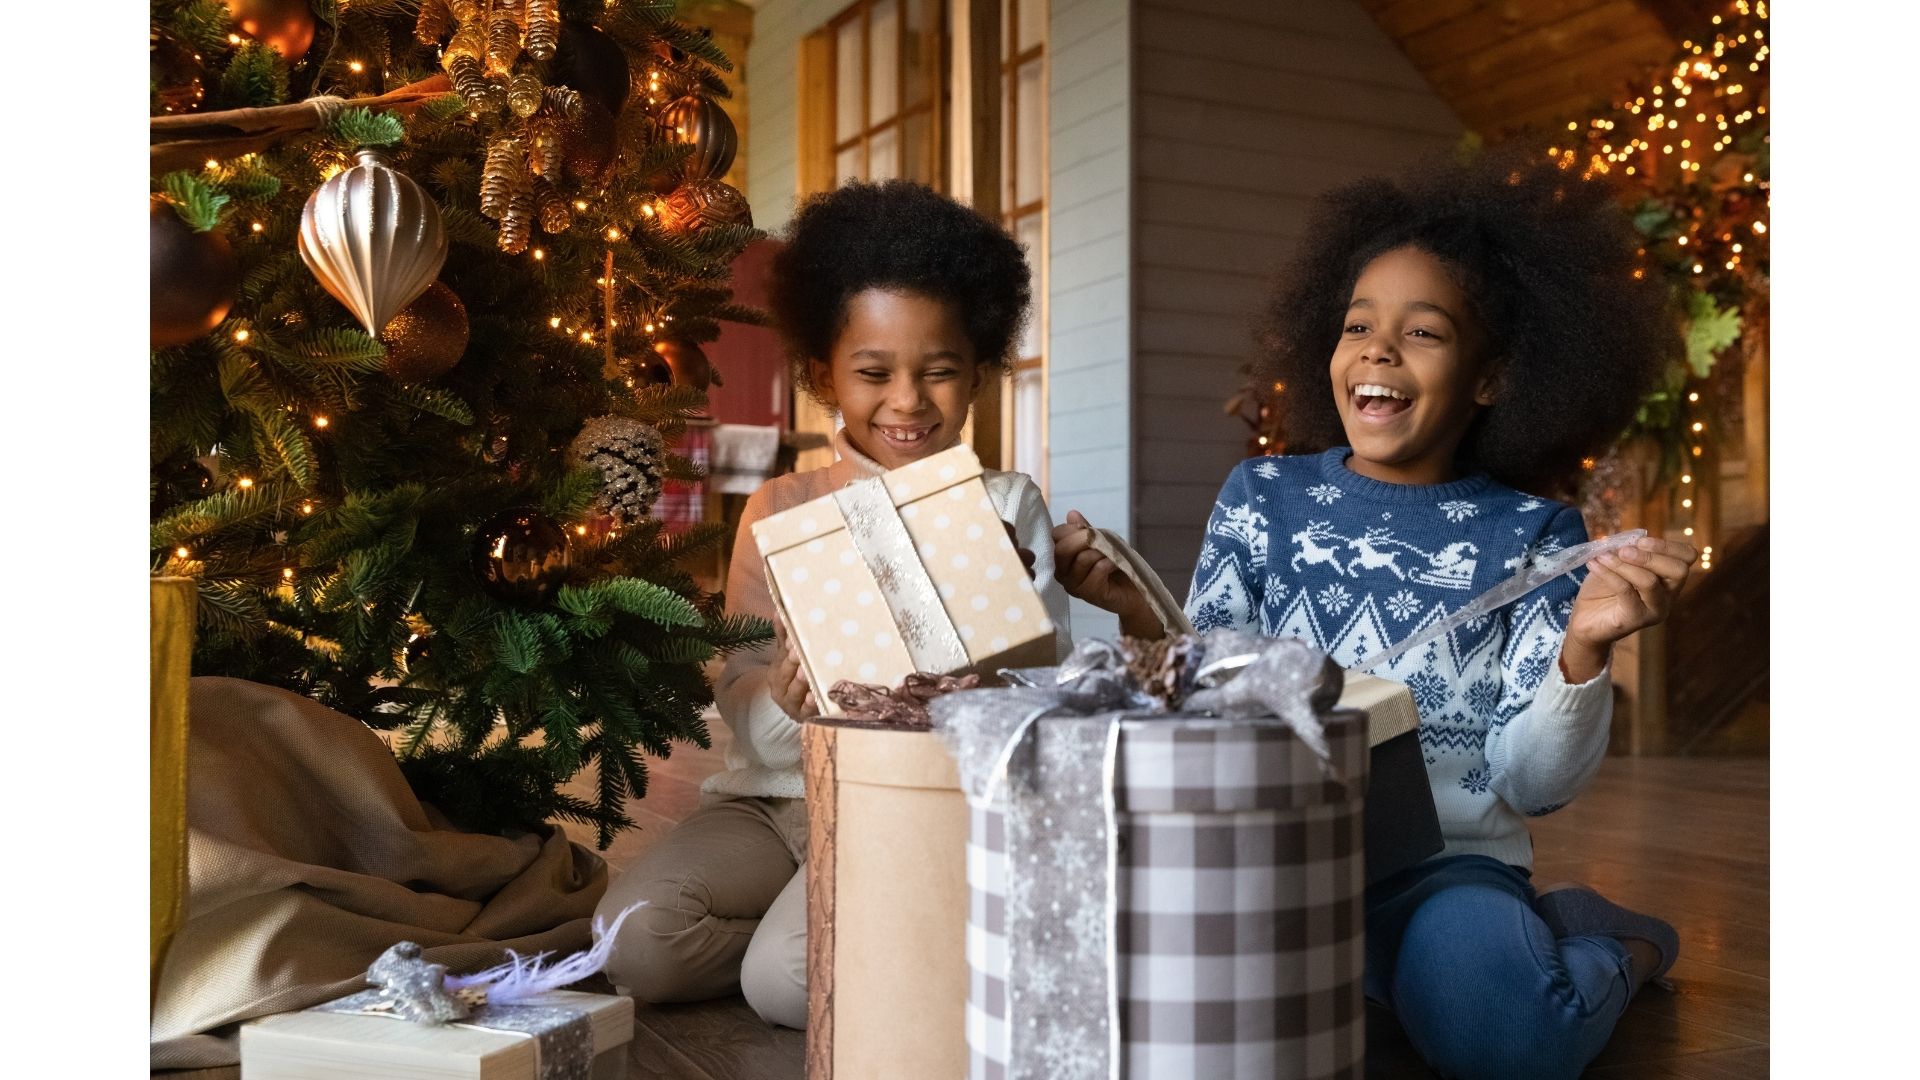 10 Regalos de Navidad originales para toda la familia en 2021